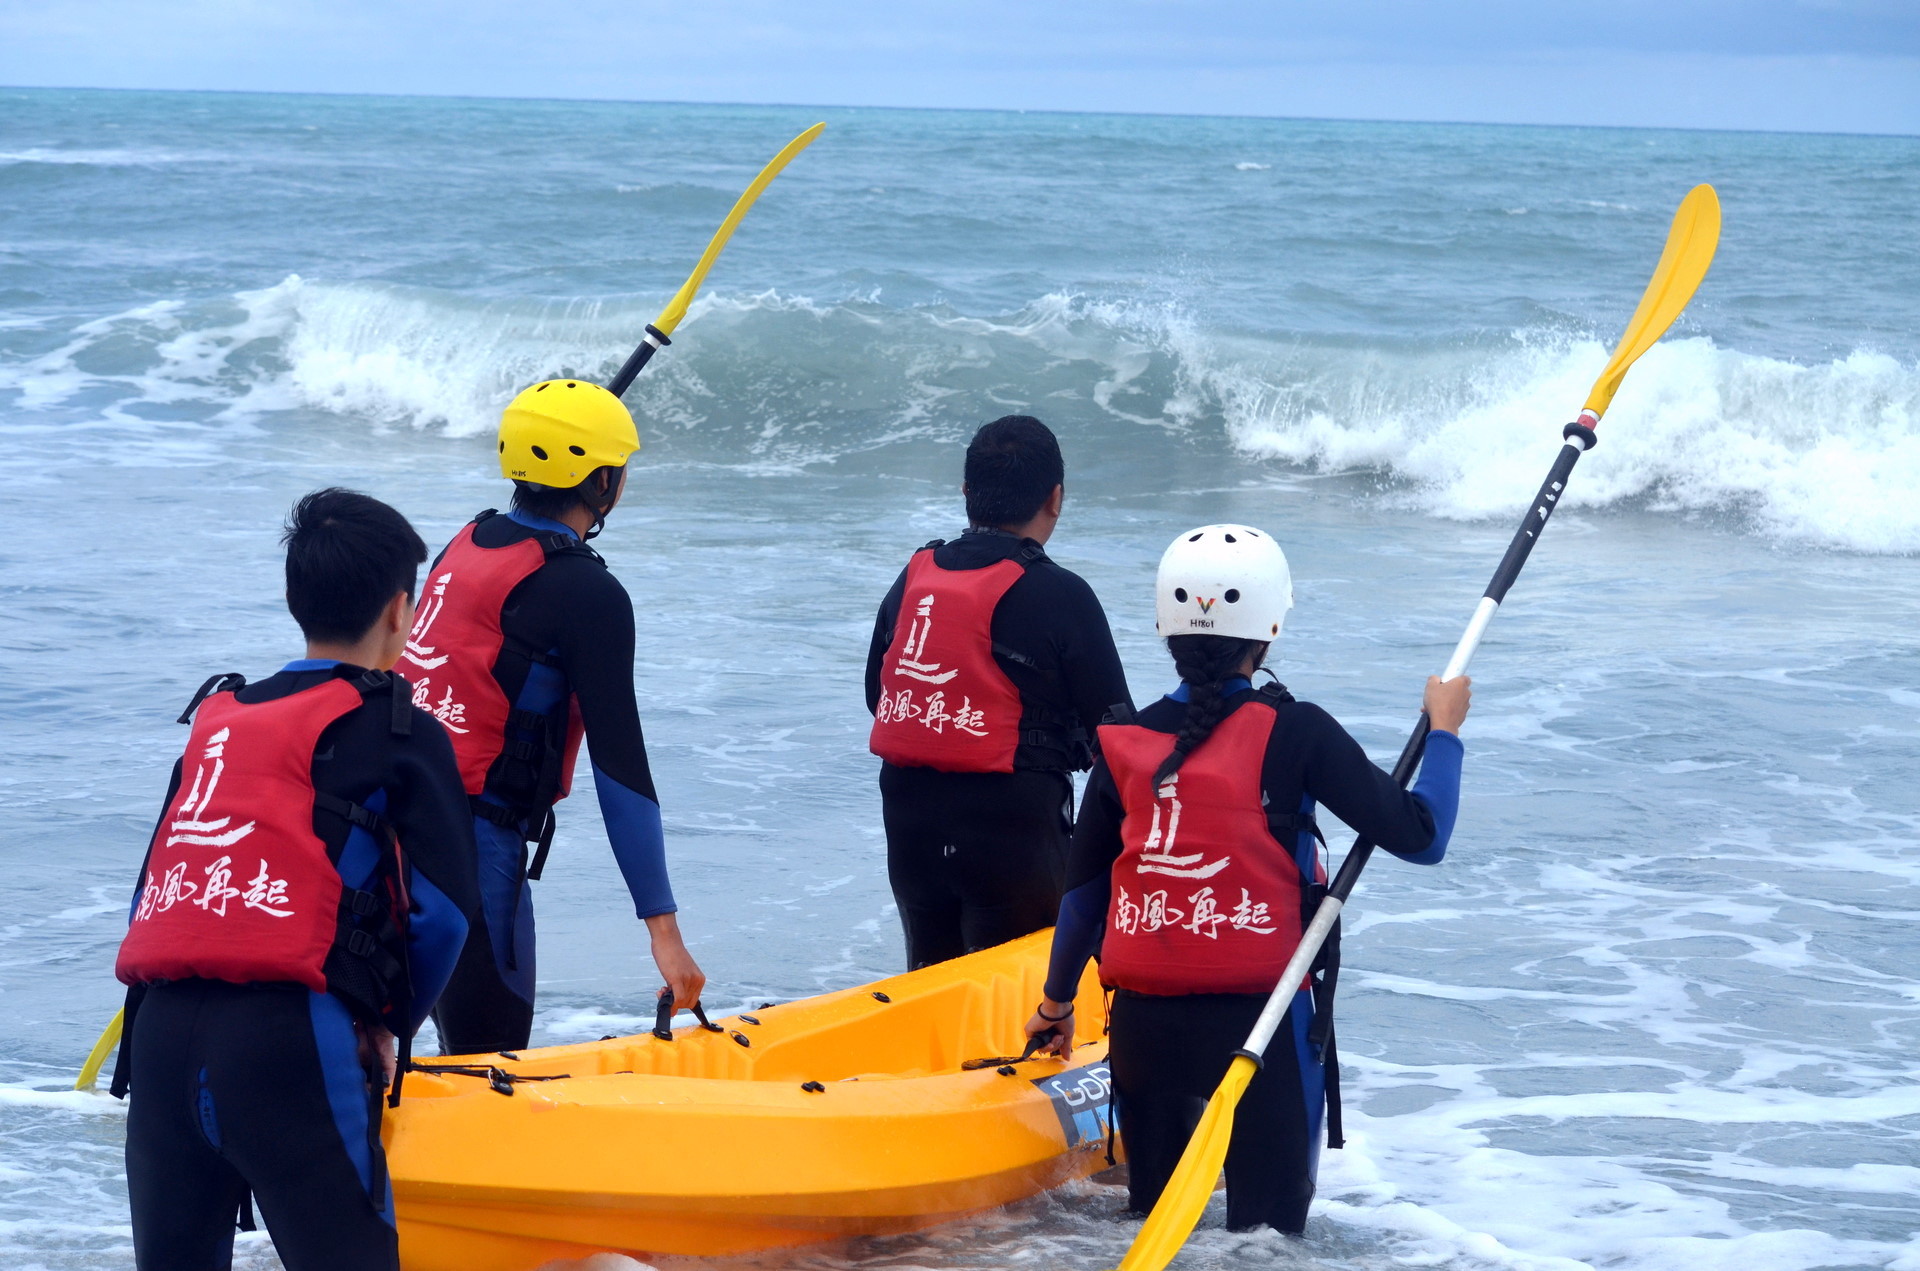 蘇帆教練帶領學生出海體驗海上獨木舟